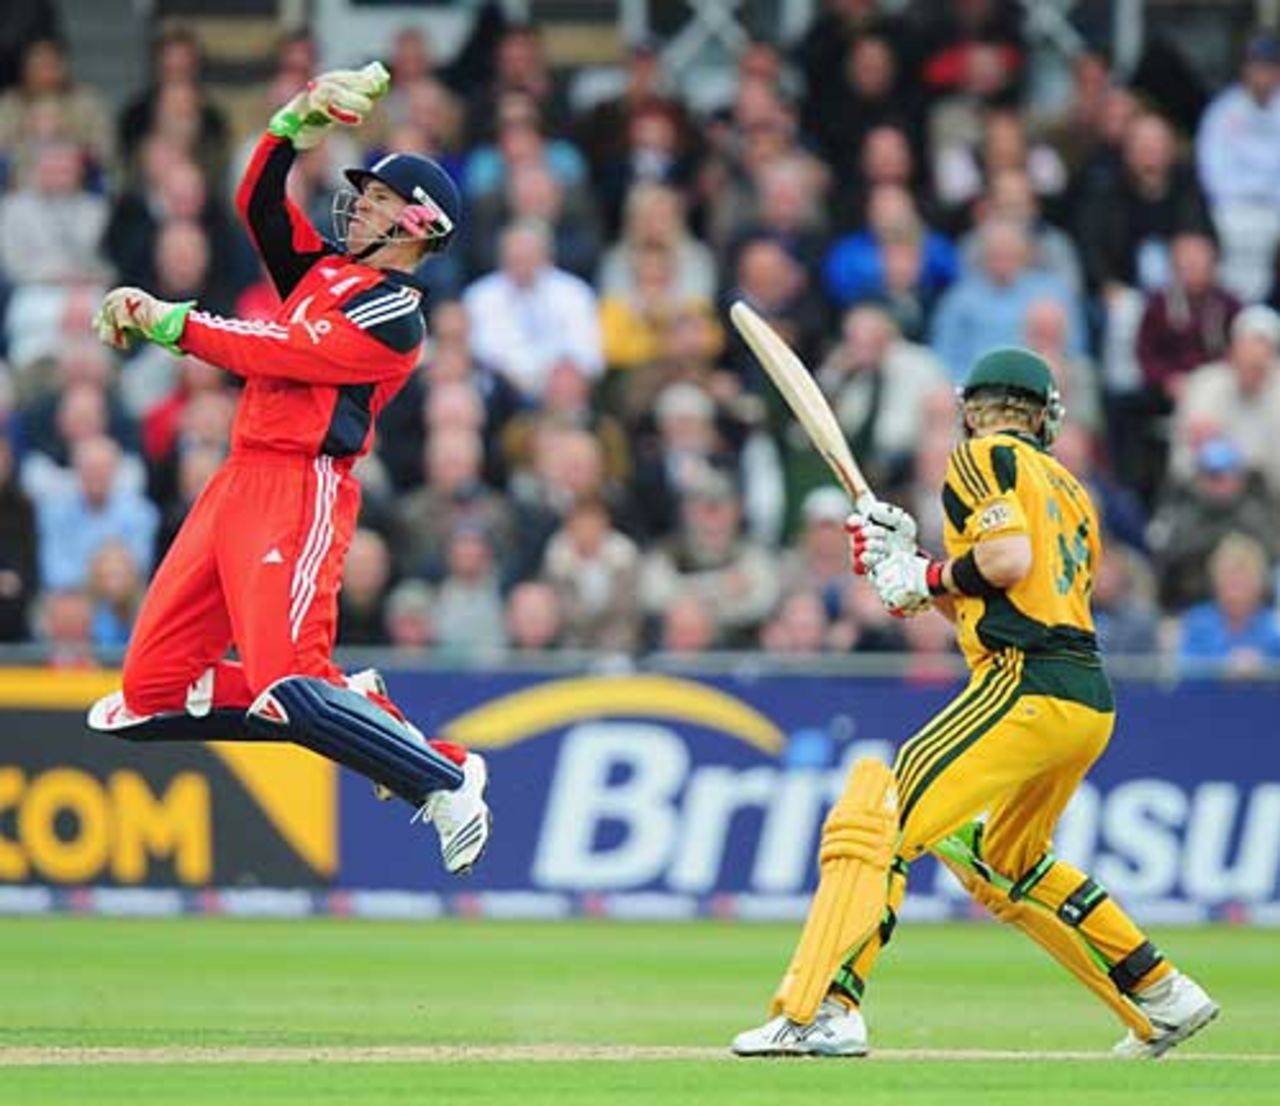 Matt Prior celebrates his catch to remove Tim Paine, England v Australia, 6th ODI, Trent Bridge, September 17, 2009